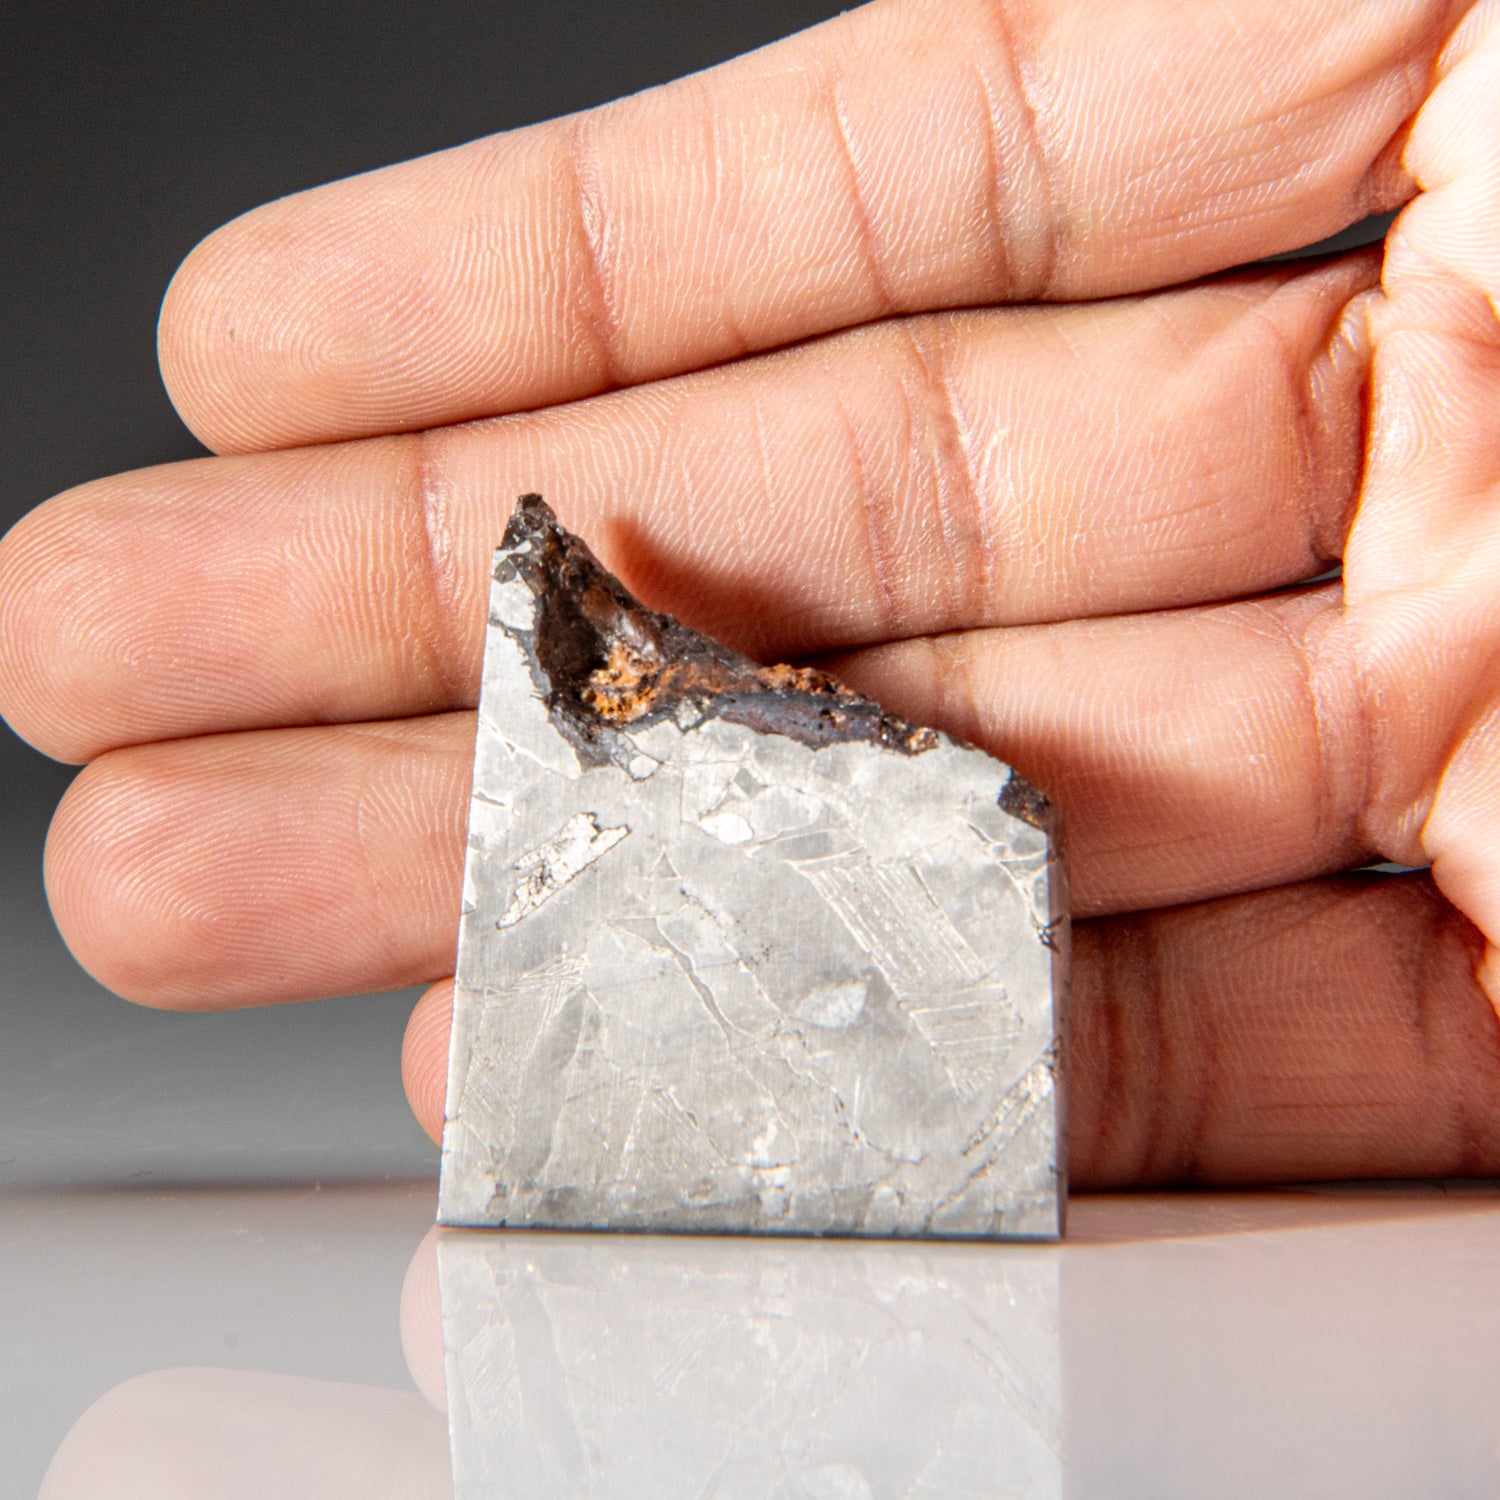 Genuine Muonionalusta Meteorite Slice (35.9 grams)